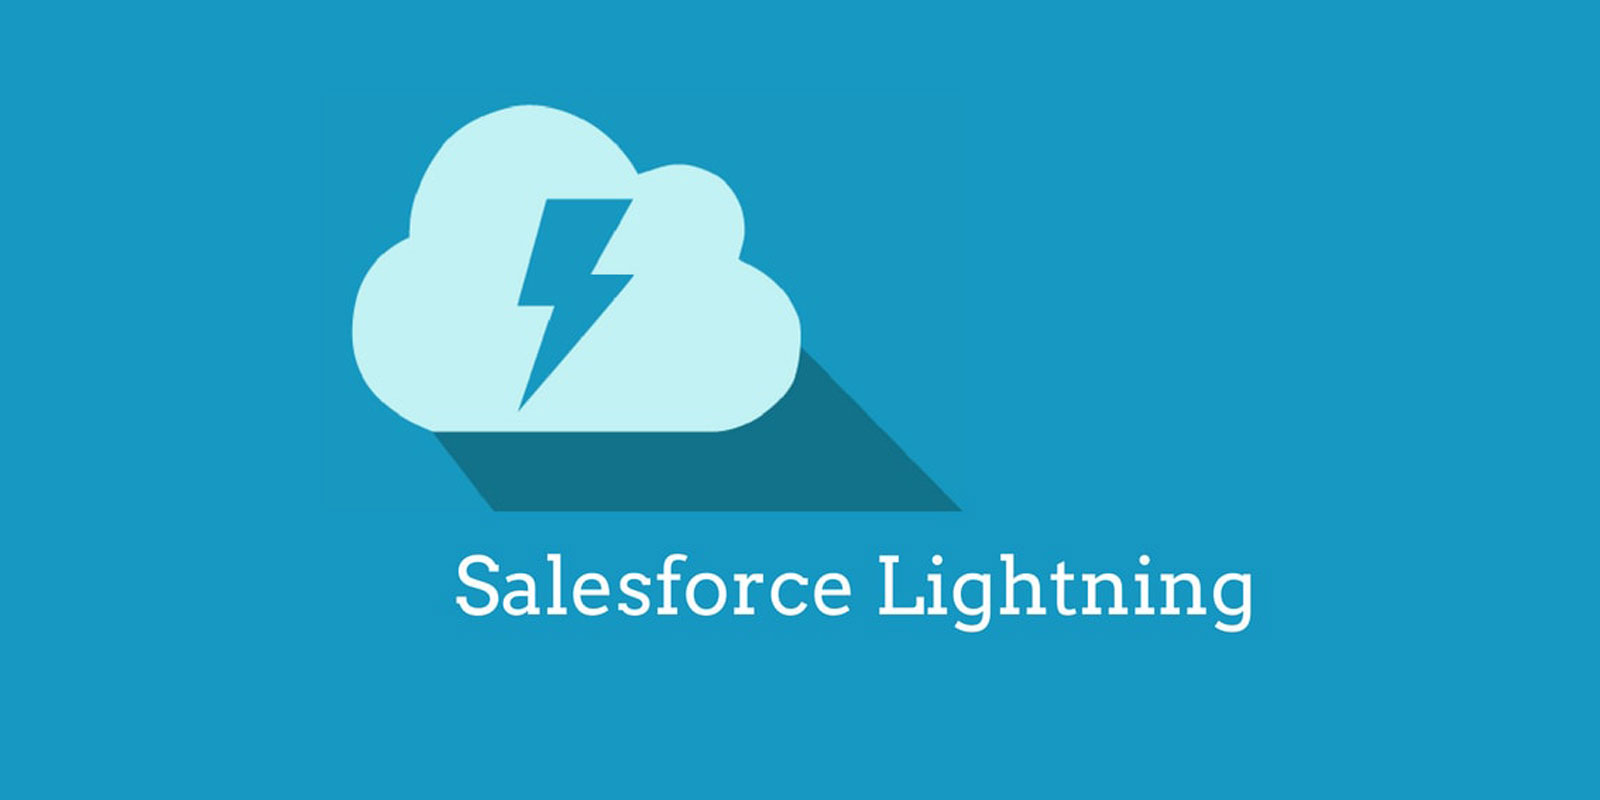 Top 9 Smart Design Tips for Salesforce Lightning | salesforce development